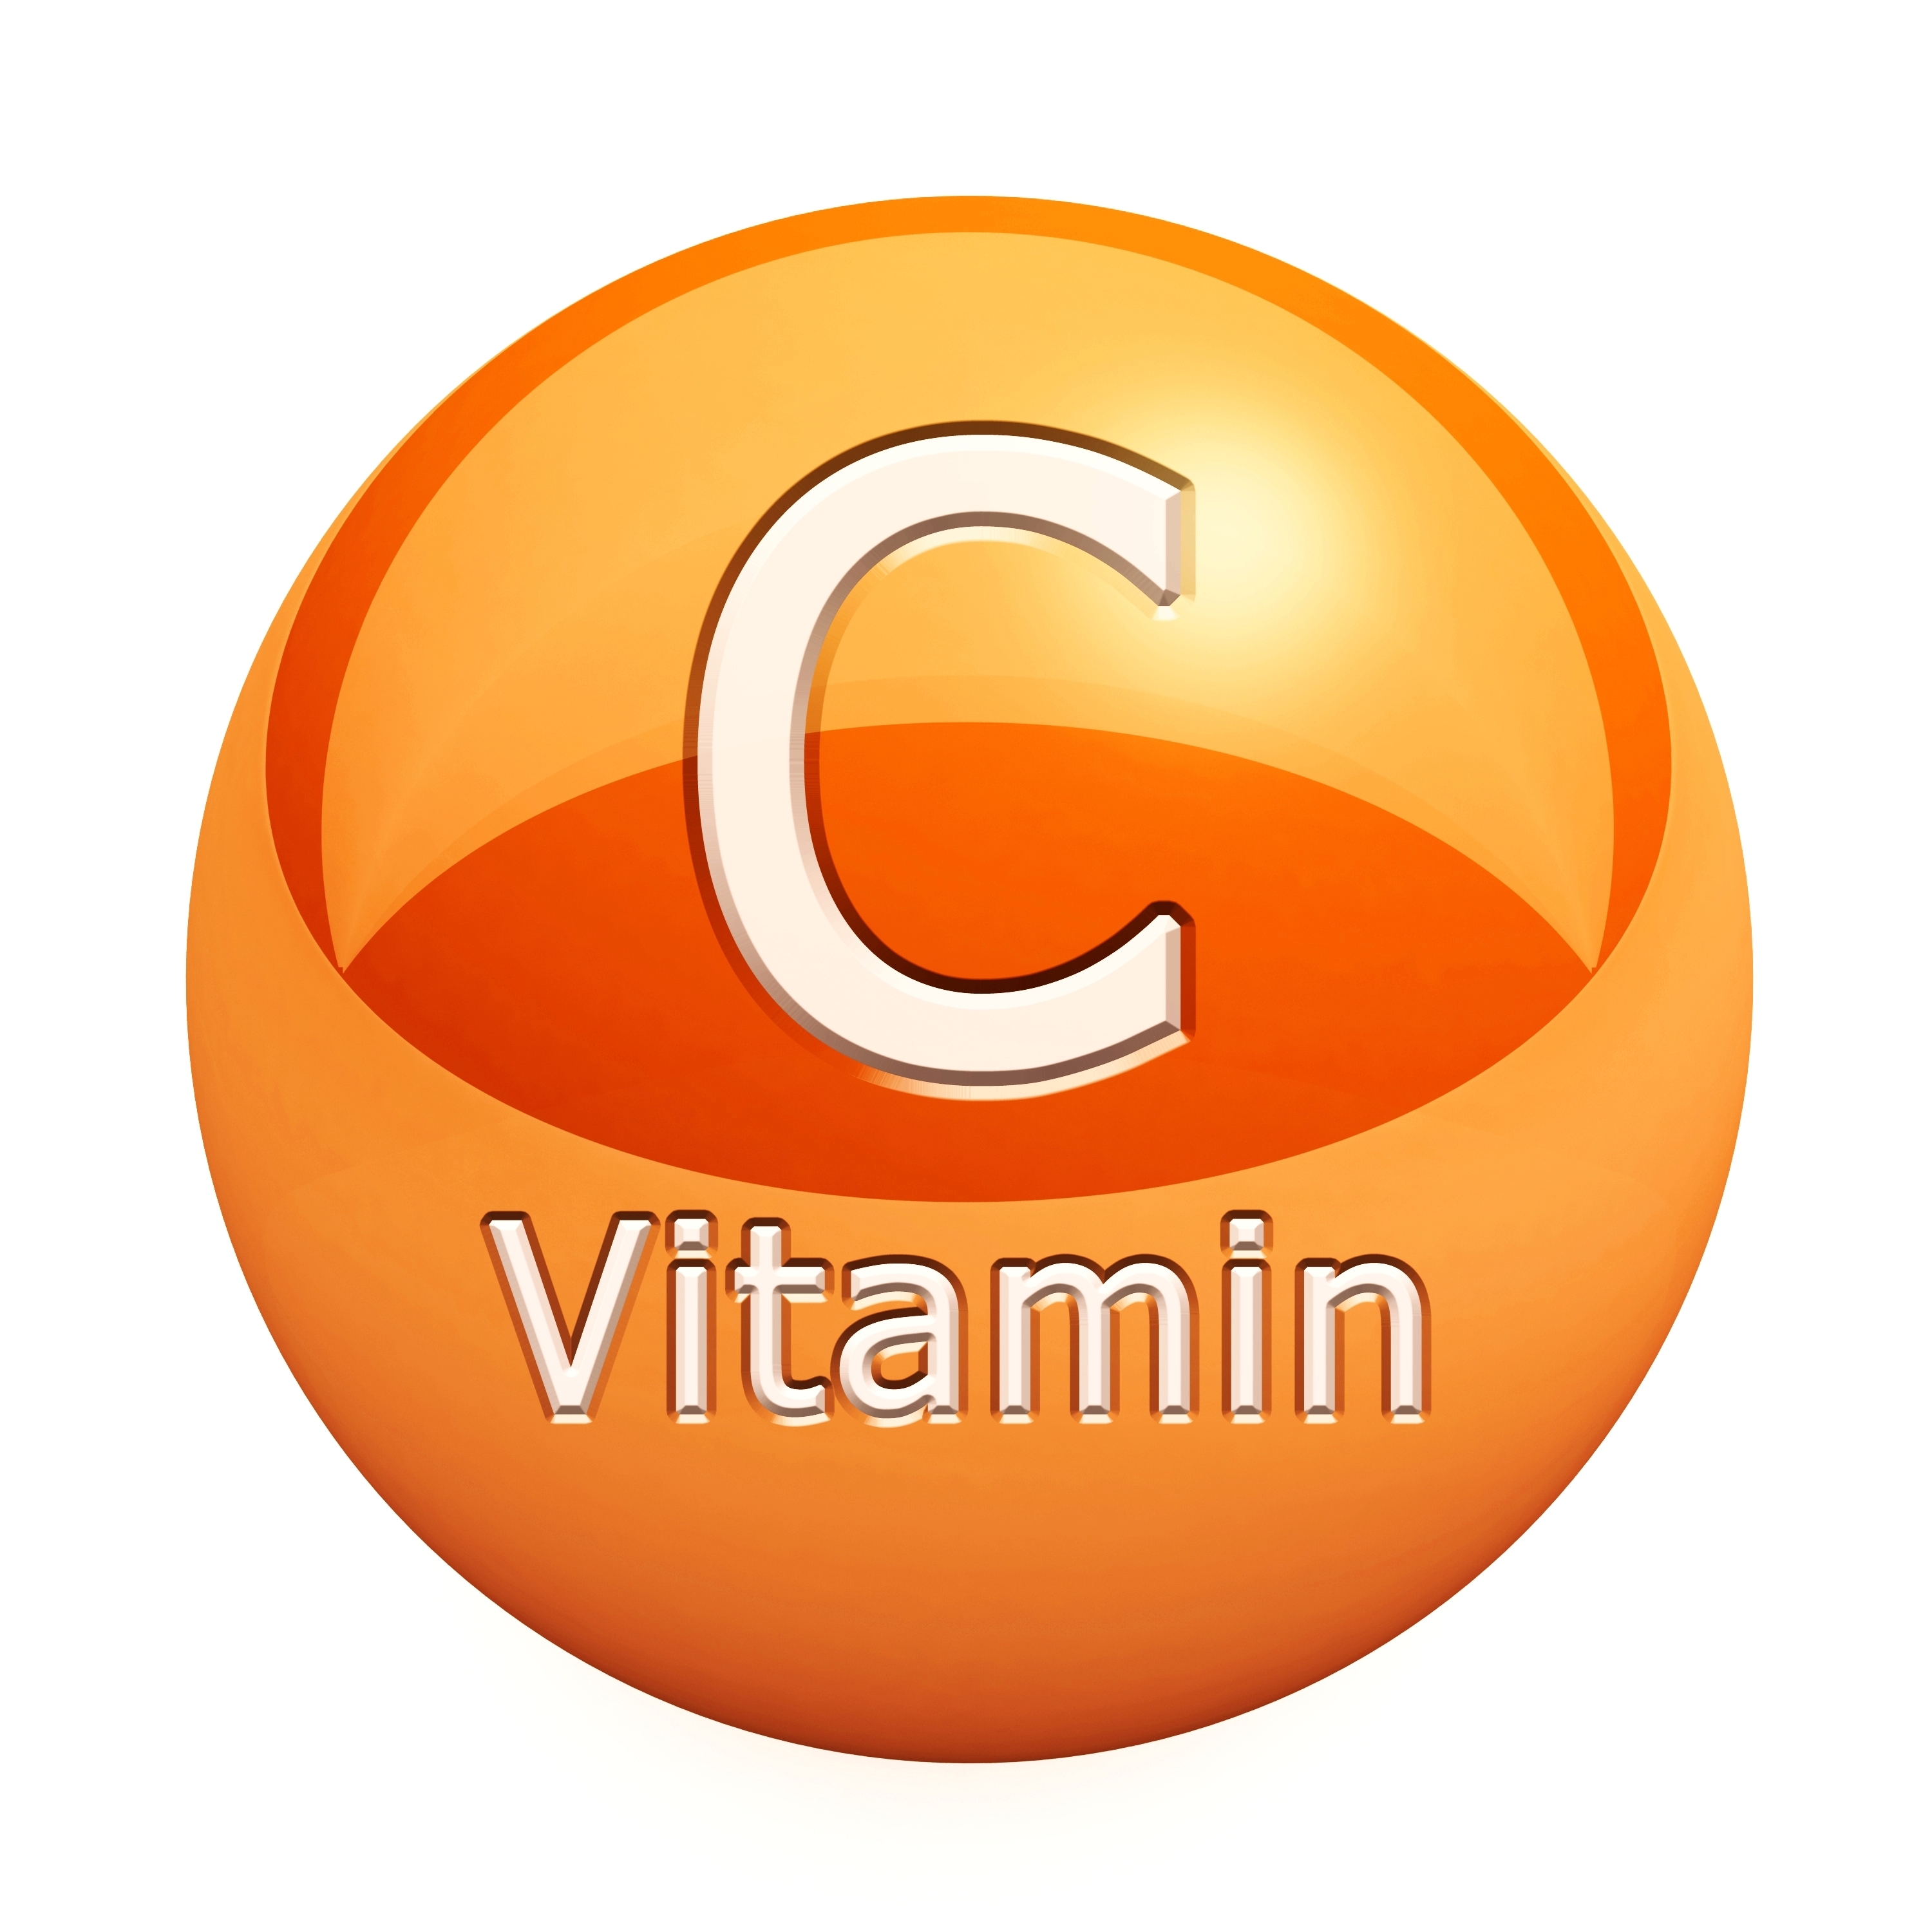 Vitamin C luôn được biết đến rộng rãi như một loại thần dược tự nhiên giúp chống oxy hóa và làm sáng da